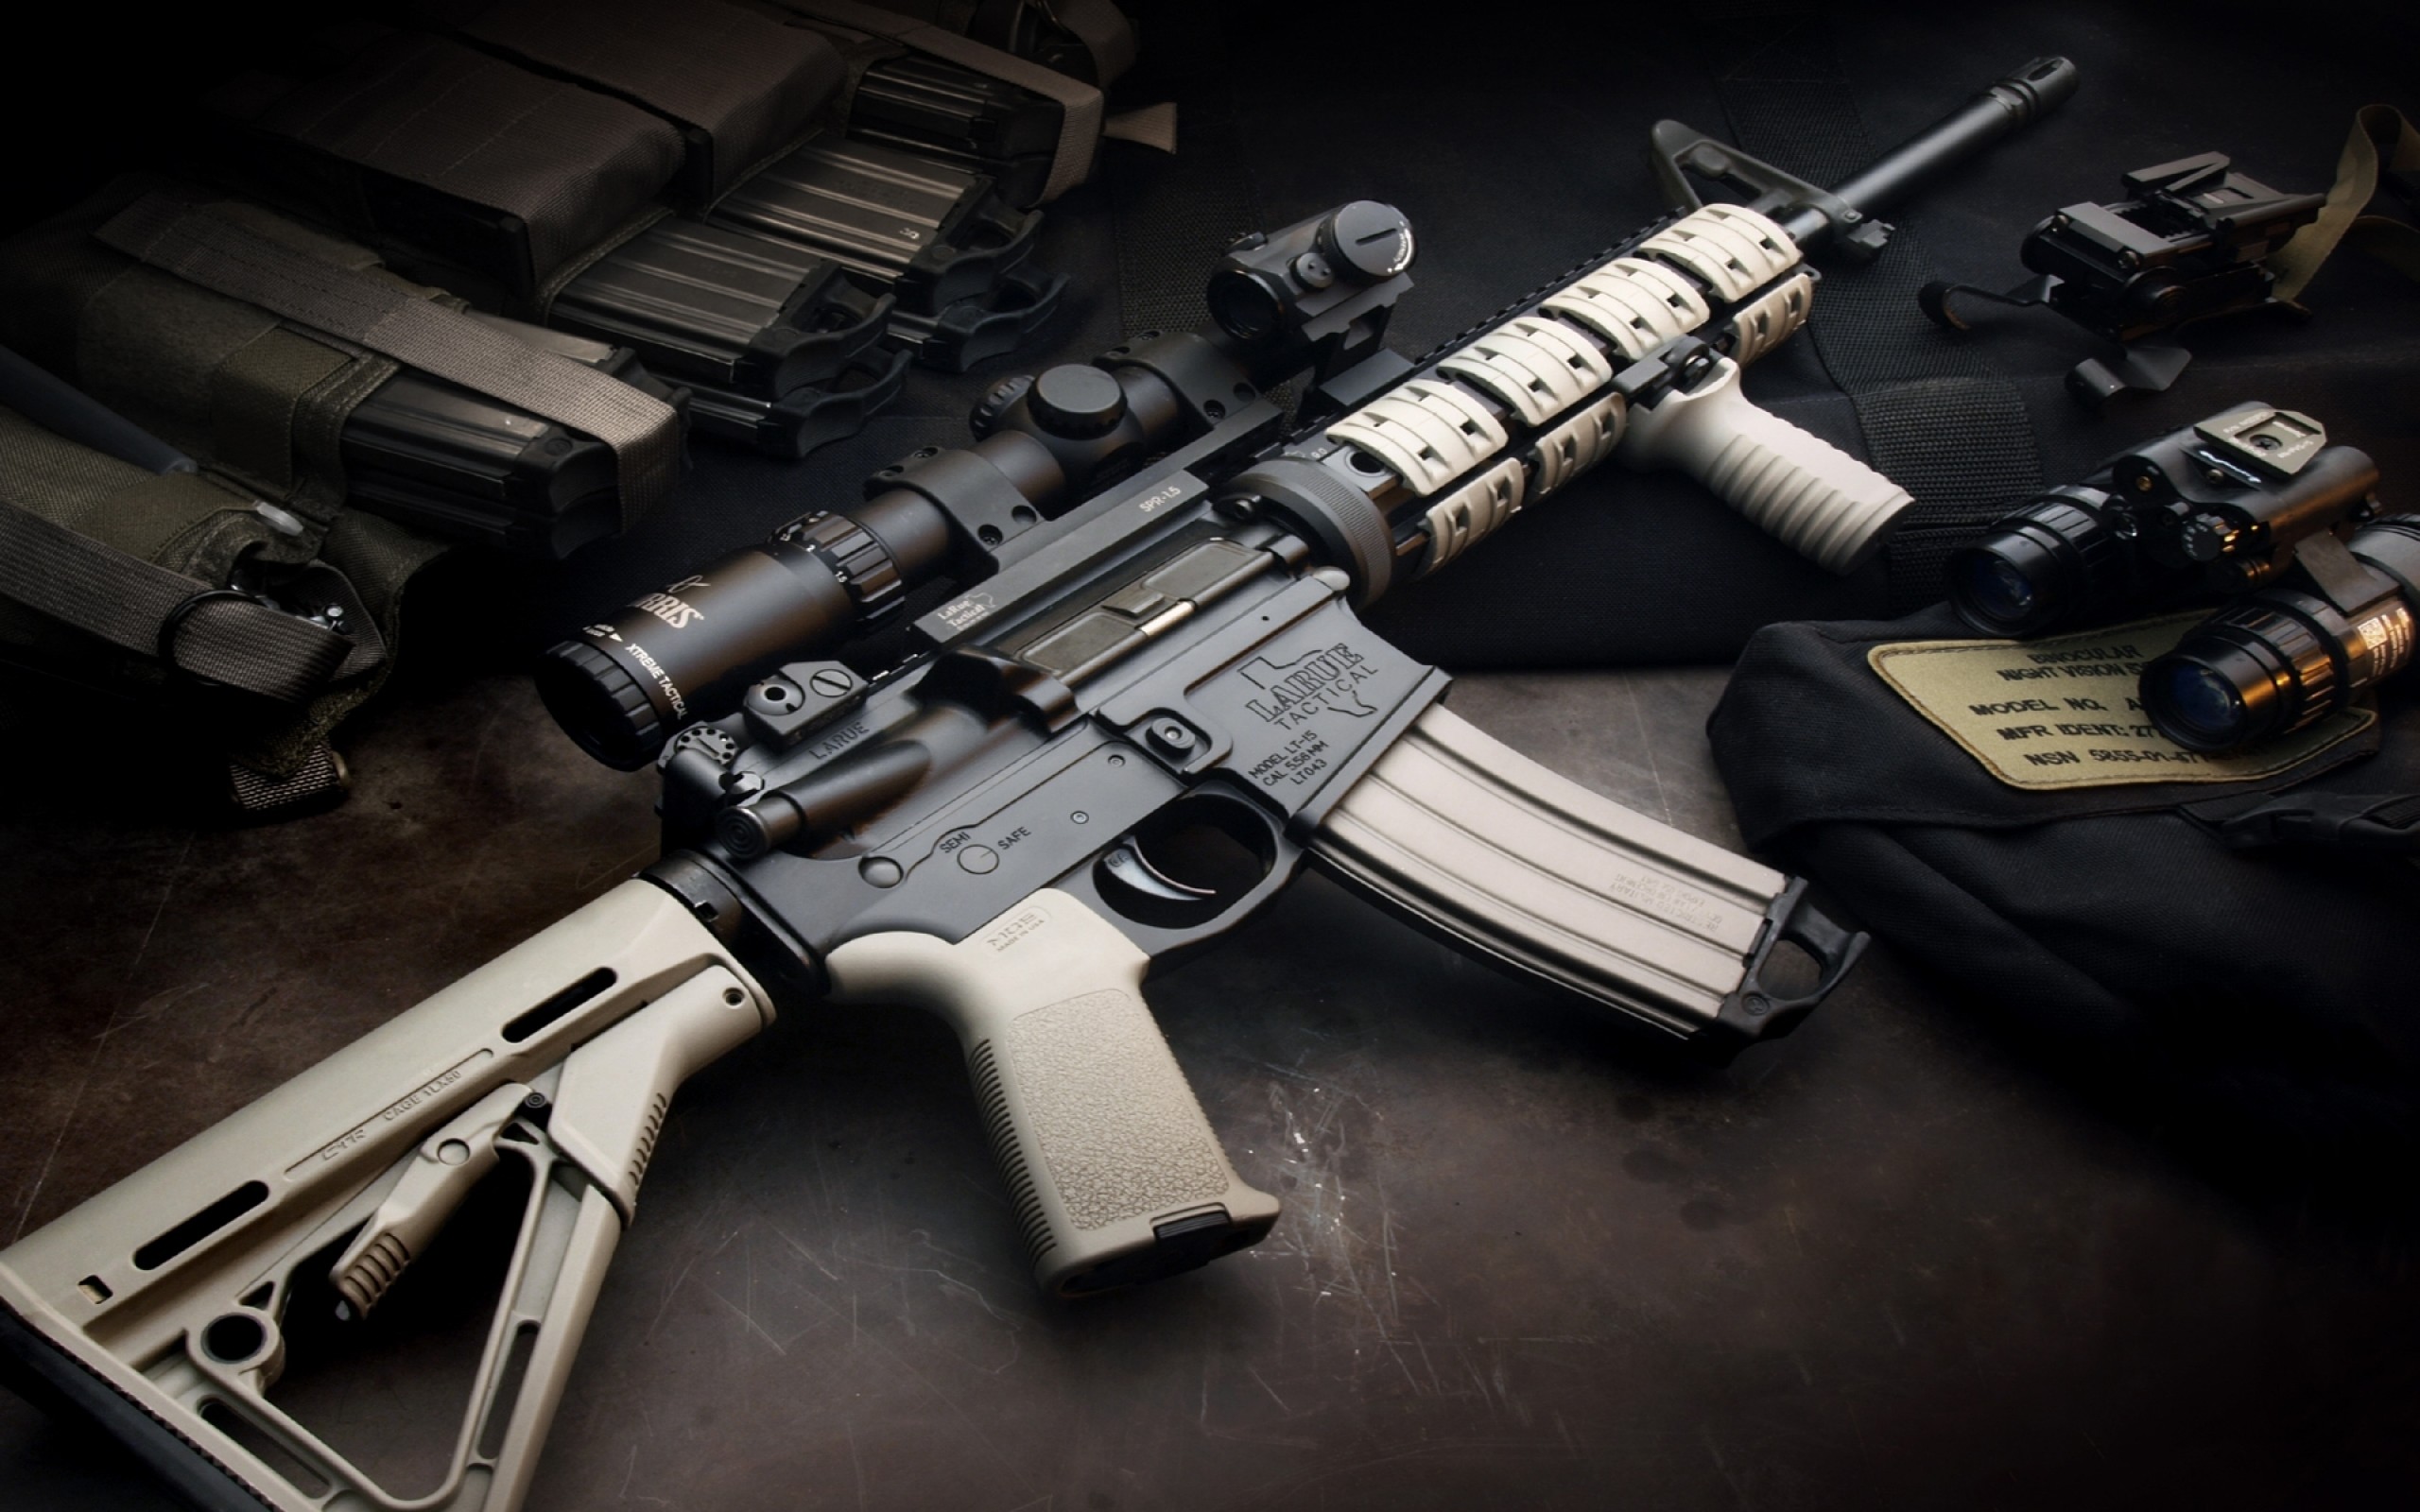 2560x1600 Kalashnikov Gun Wallpaper | kalashnikov gun wallpaper 1080p, kalashnikov gun  wallpaper desktop, kalashnikov gun wallpaper hd, kalashnikov gun wallp…